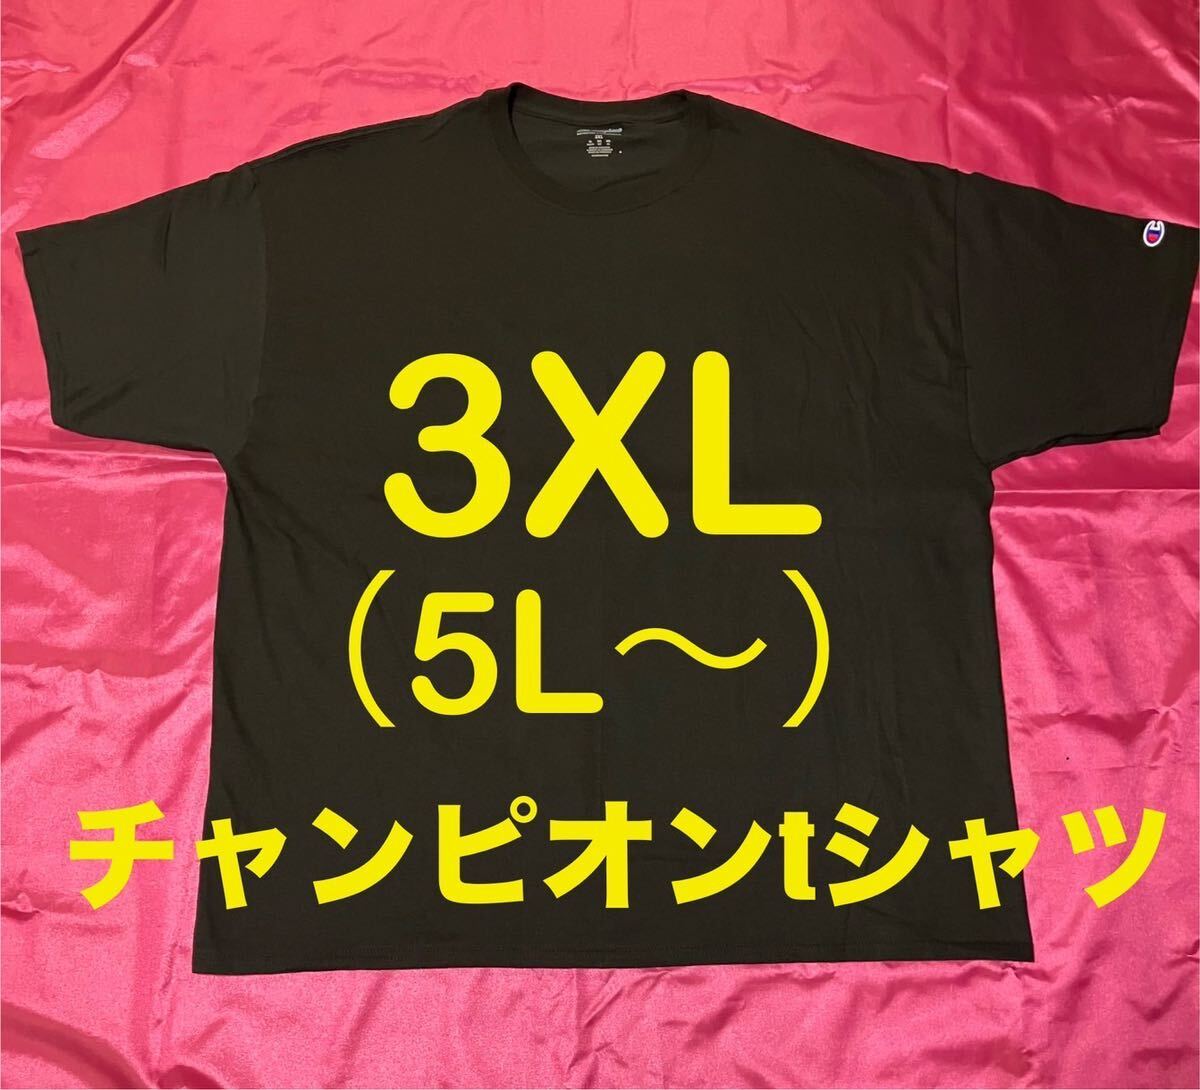 チャンピオン ブラック色 BIGTシャツ メンズ大きいサイズ 3XL の画像1